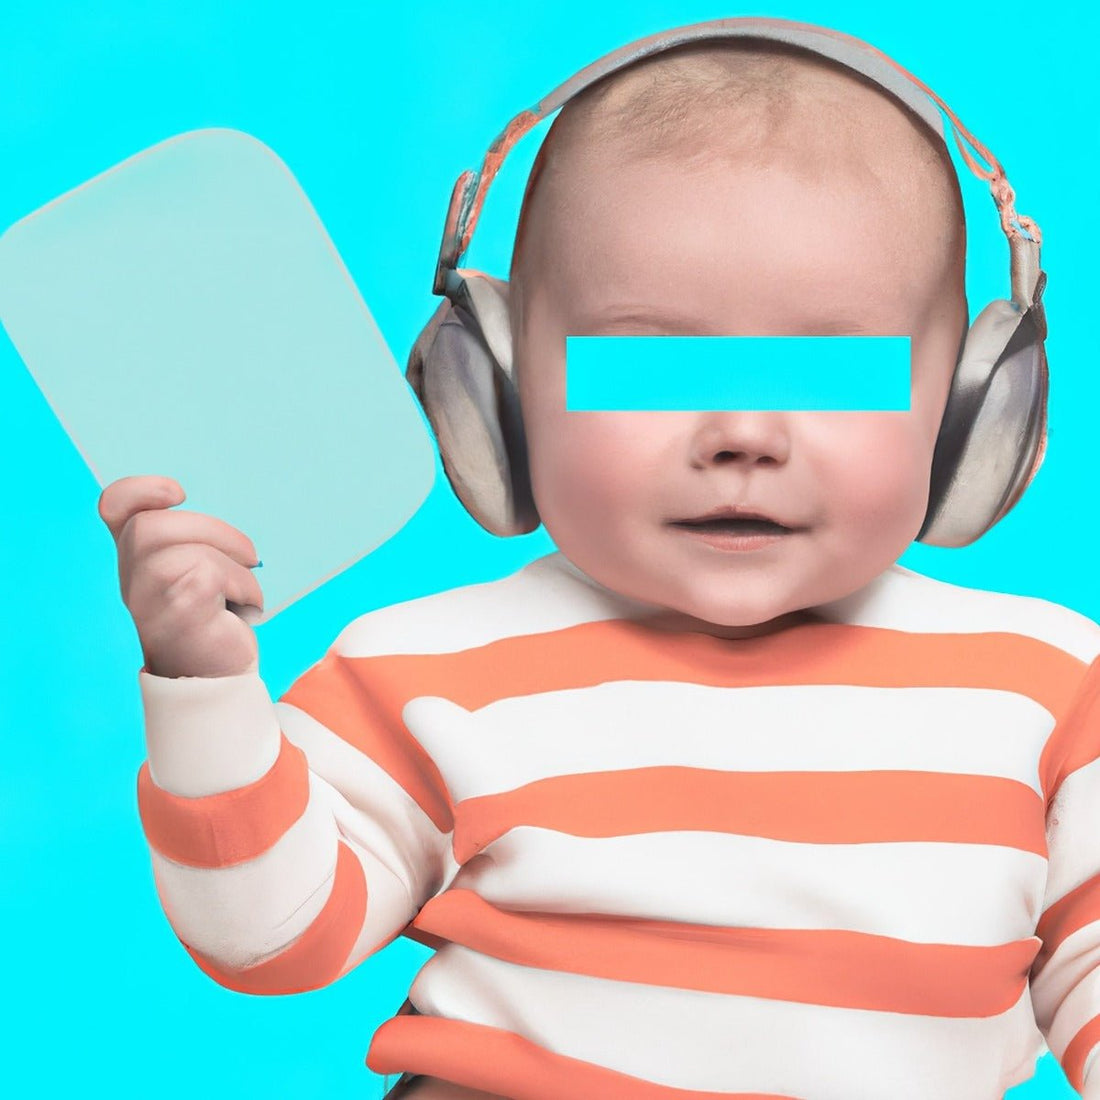 Ohrstöpsel für Babys und Kleinkinder | Welcher Gehörschutz für Säuglinge und Kinder? - BERLIN EAR GUARD® OHRSTÖPSEL SHOP